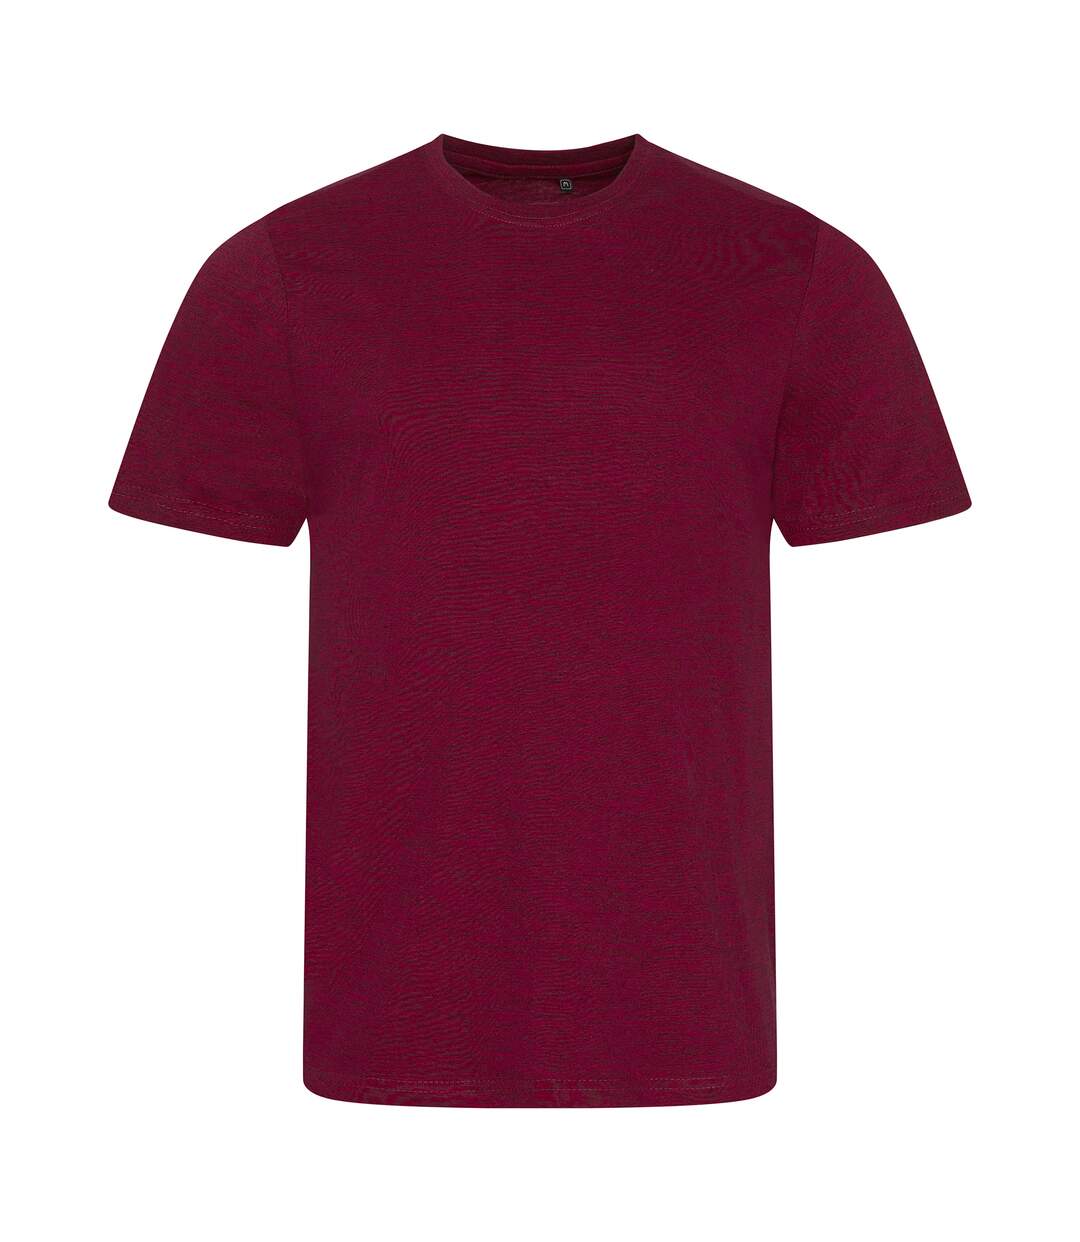 AWDis - T-shirt manches courtes - Homme (Rouge chiné) - UTPC2977